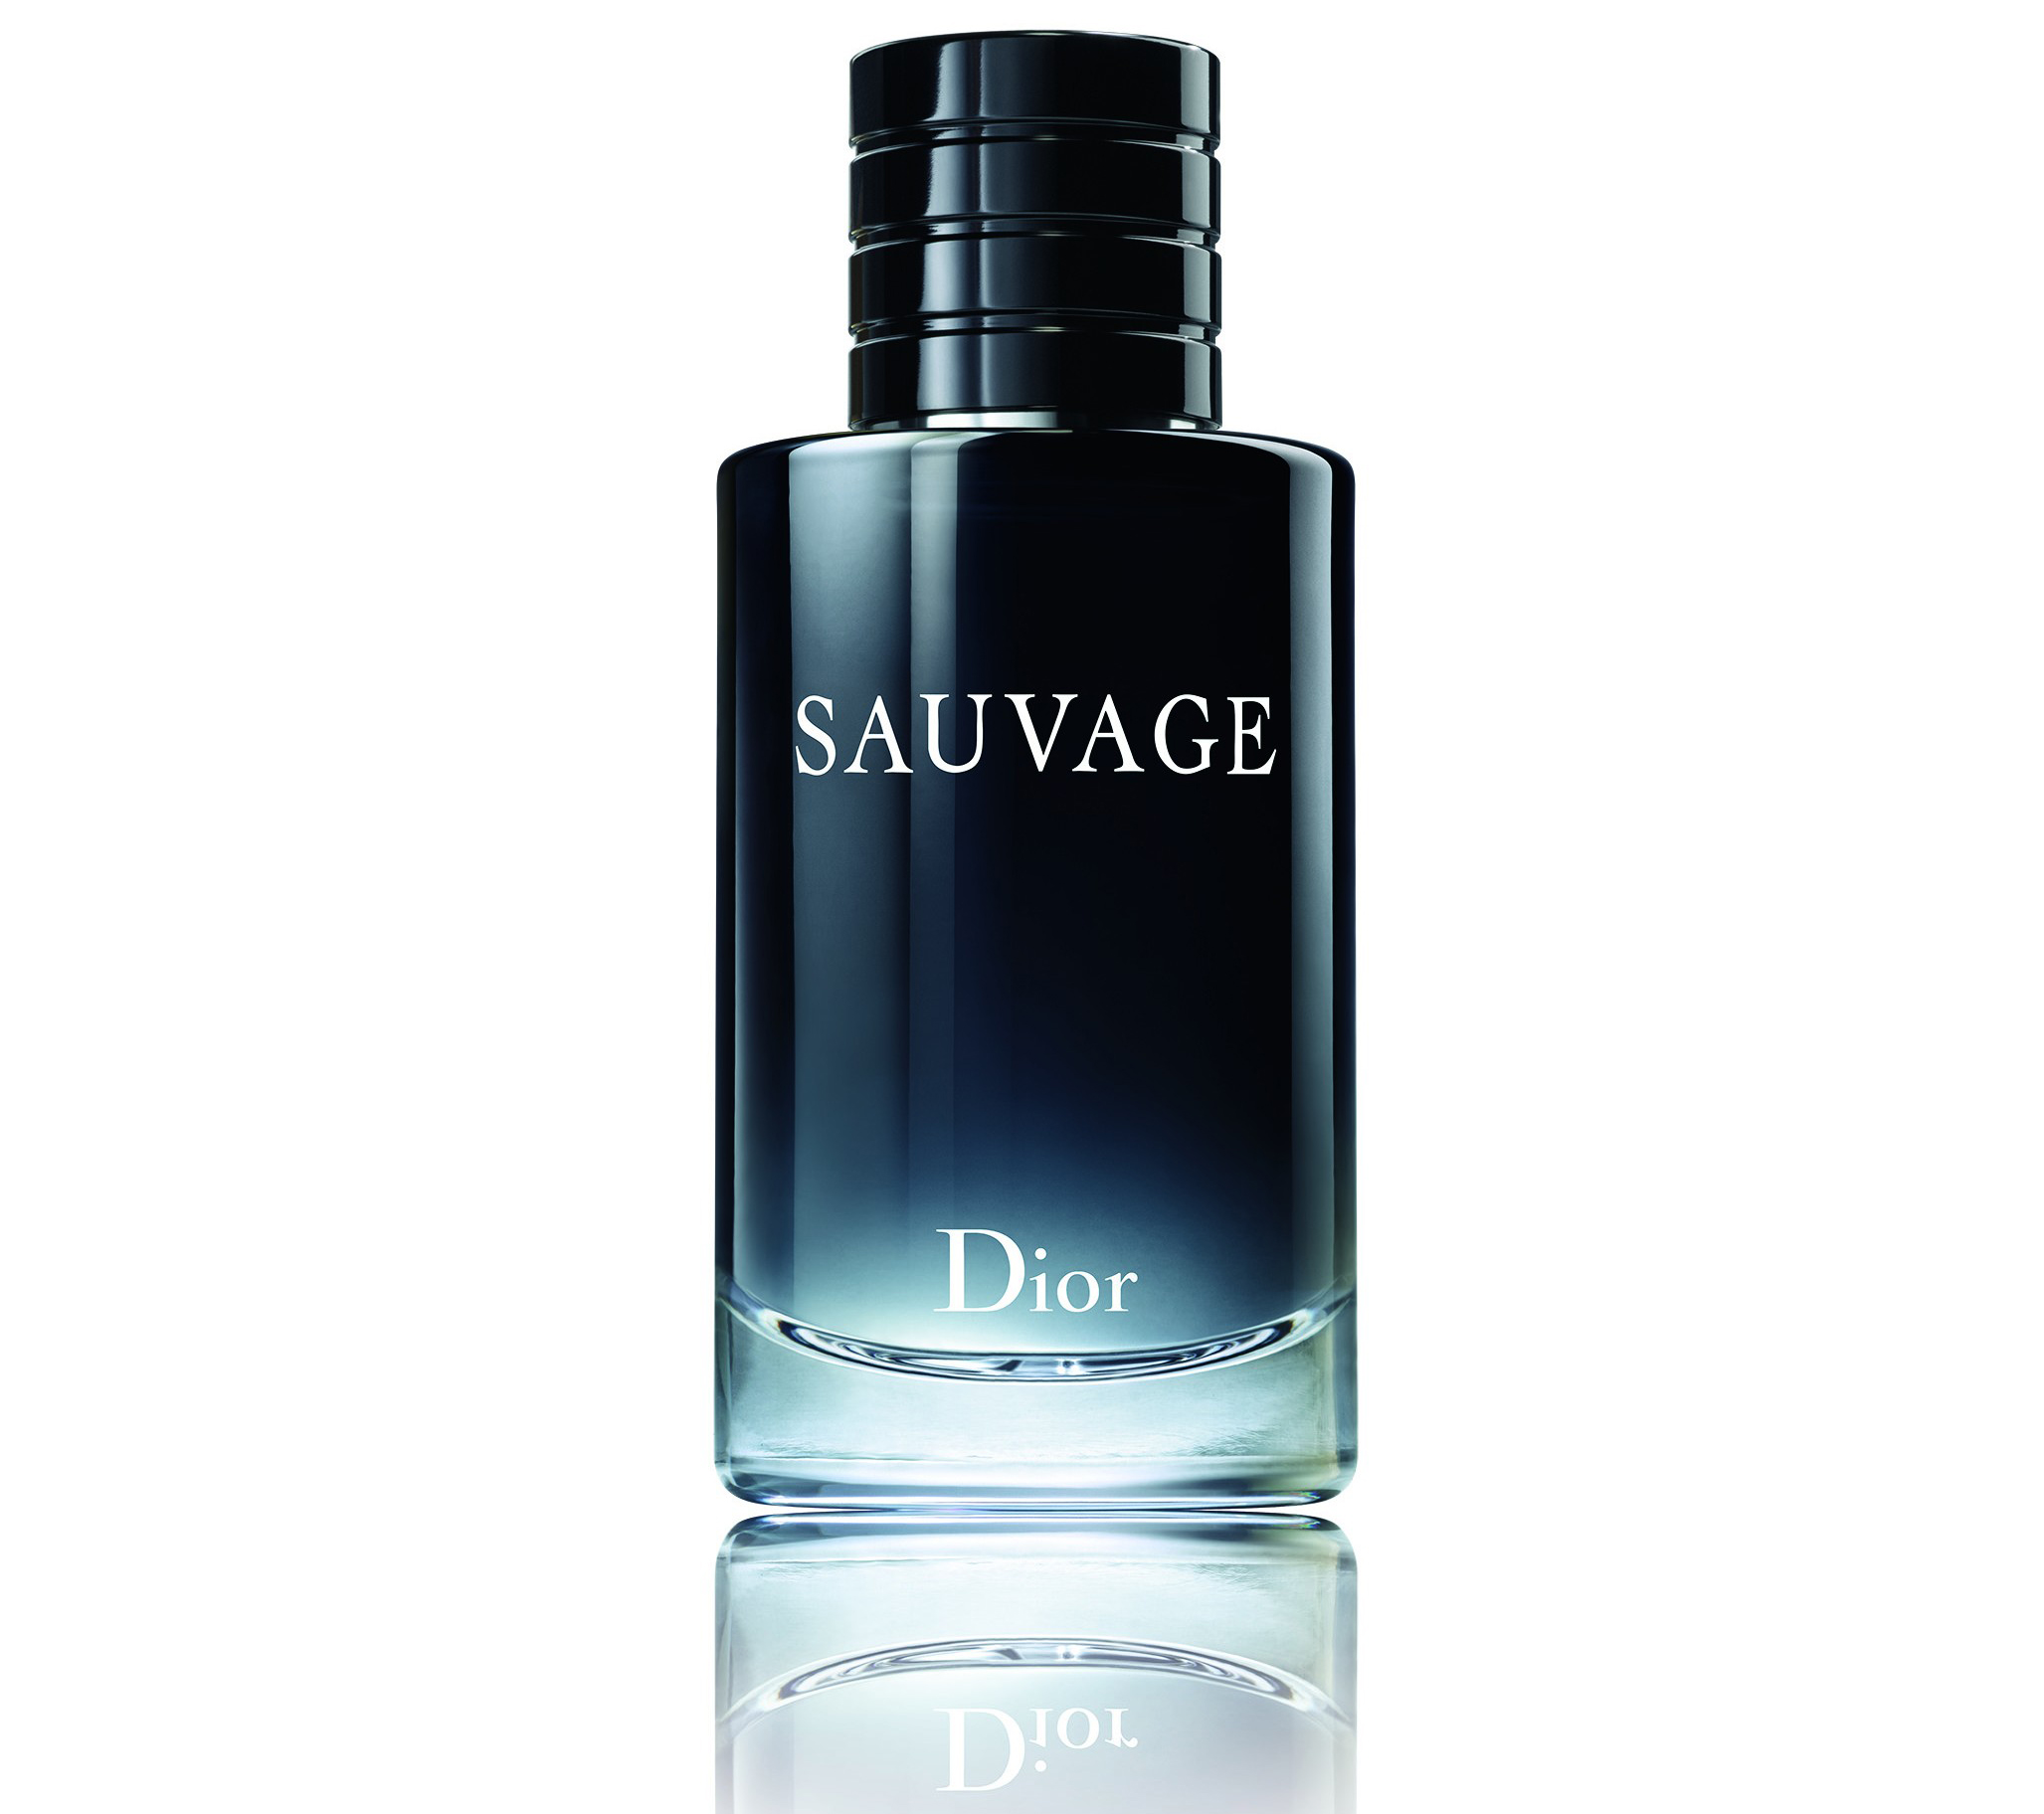 Nu släpps Johnny Depp och Diors hyllade parfymsamarbete - Metro Mode